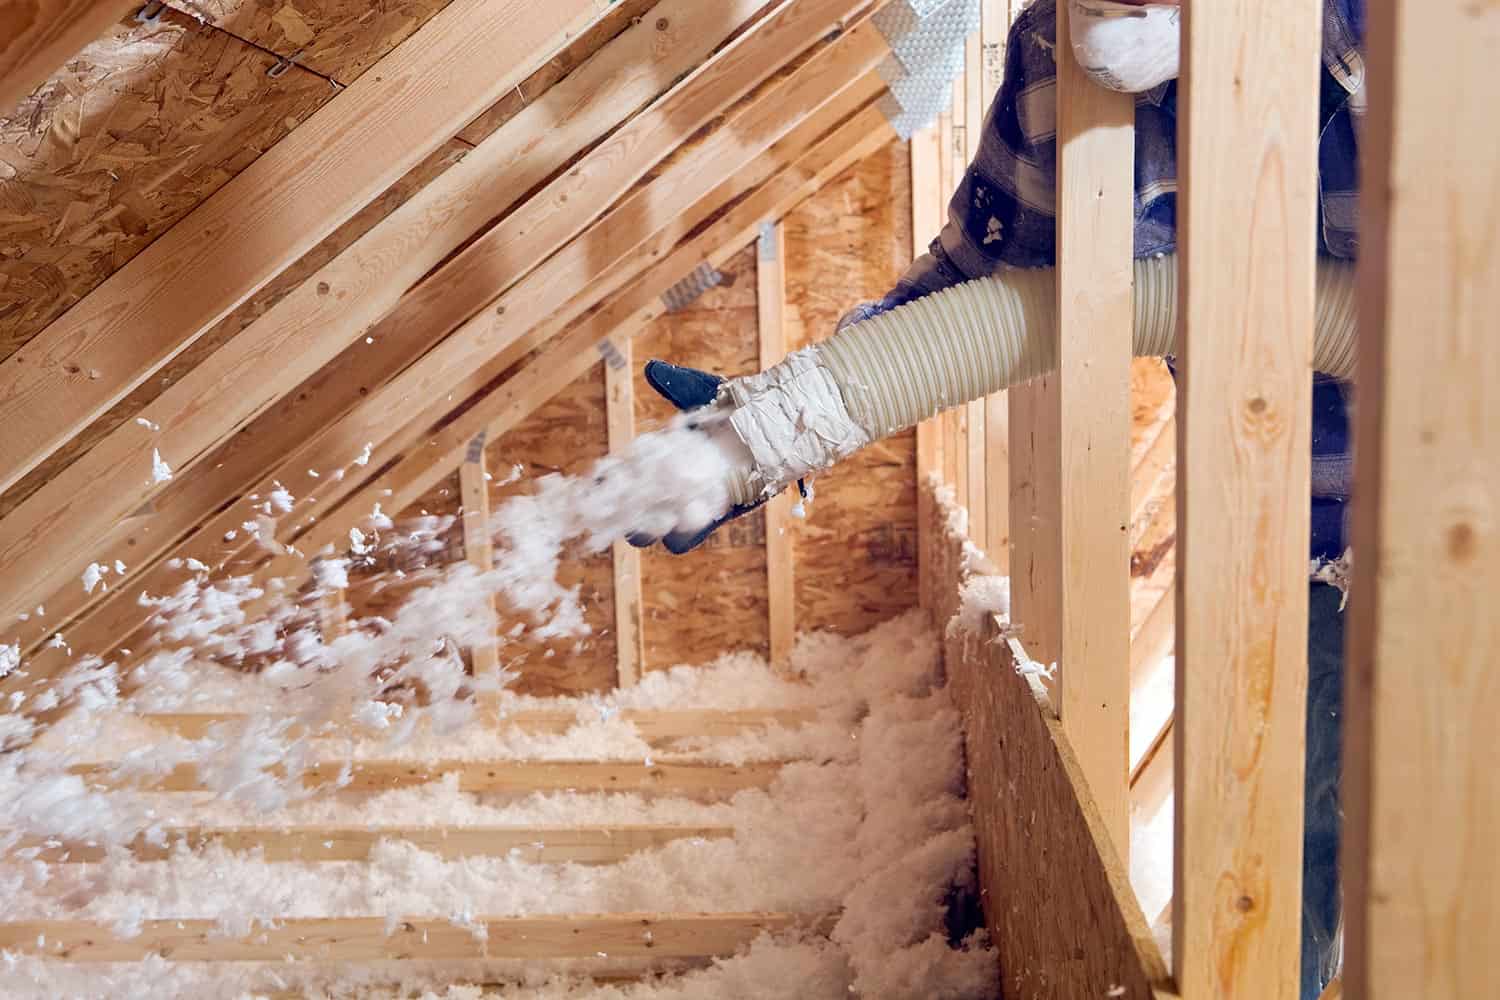 Worker spraying blown fiberglass insulation